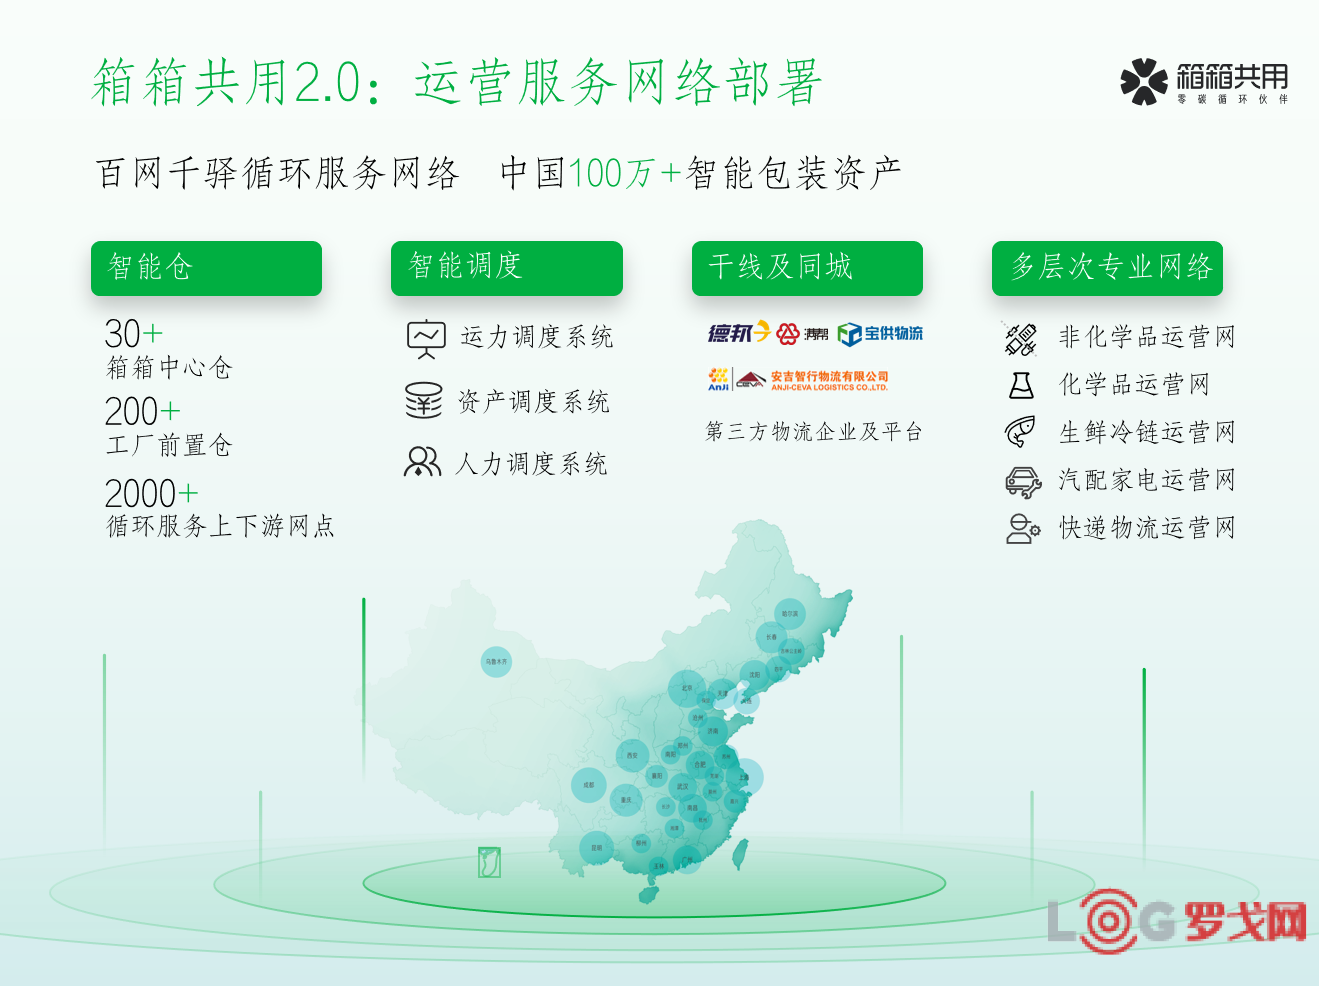 2021 LOG 中国供应链&物流科技创新企业-上海箱箱智能科技有限公司